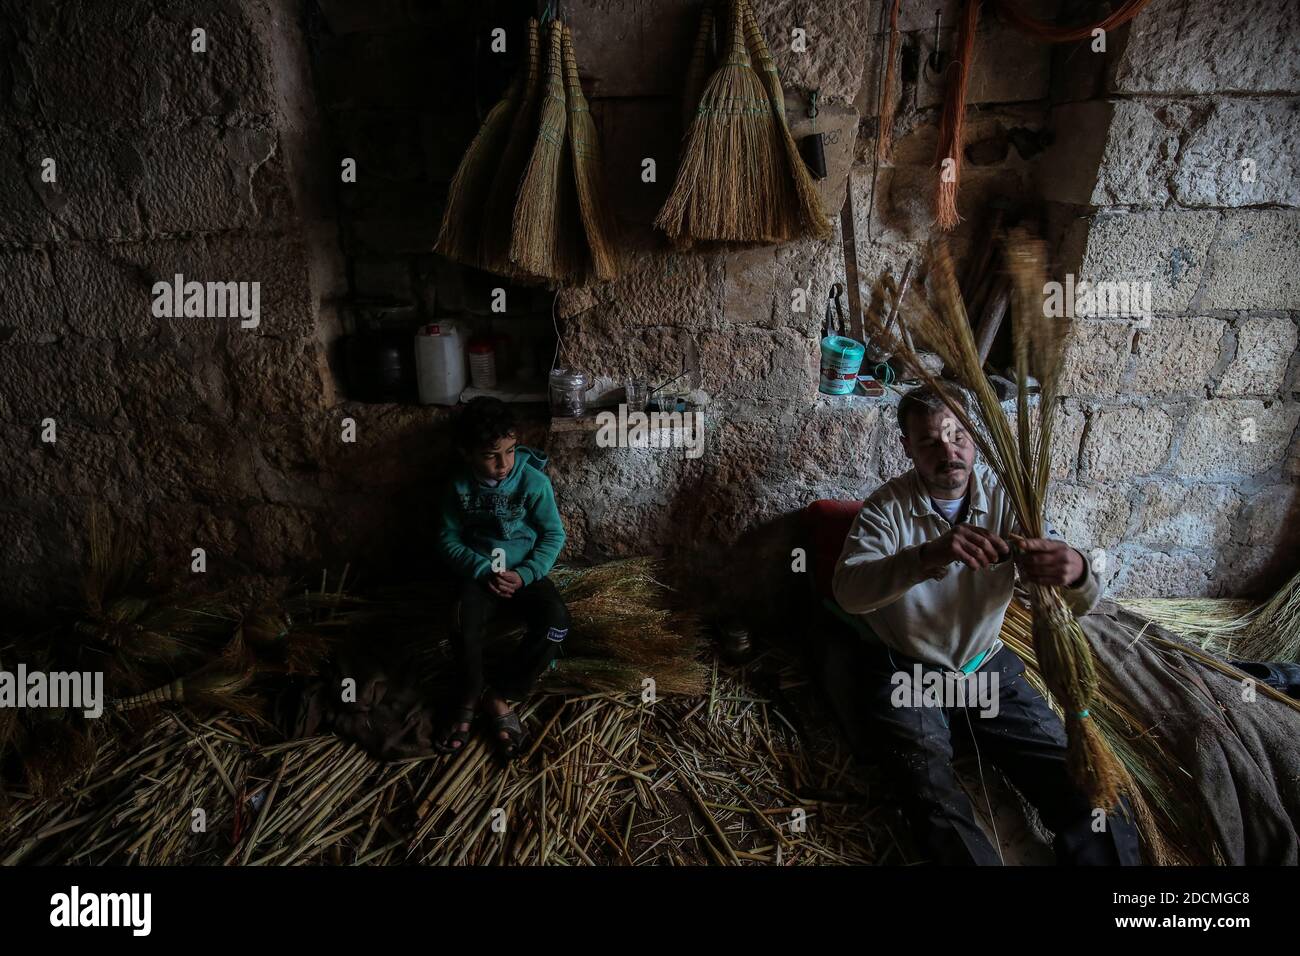 Idlib City, Syrie. 22 novembre 2020. Un ouvrier fabrique des balais de paille faits main dans un petit atelier dans un quartier populaire de la ville d'Idlib. La fabrication de balais de paille a été active au cours des dernières années en raison de la dépendance des résidents au lieu des outils électriques en raison des coupures de courant. Credit: Aras Alkharboutli/dpa/Alamy Live News Banque D'Images